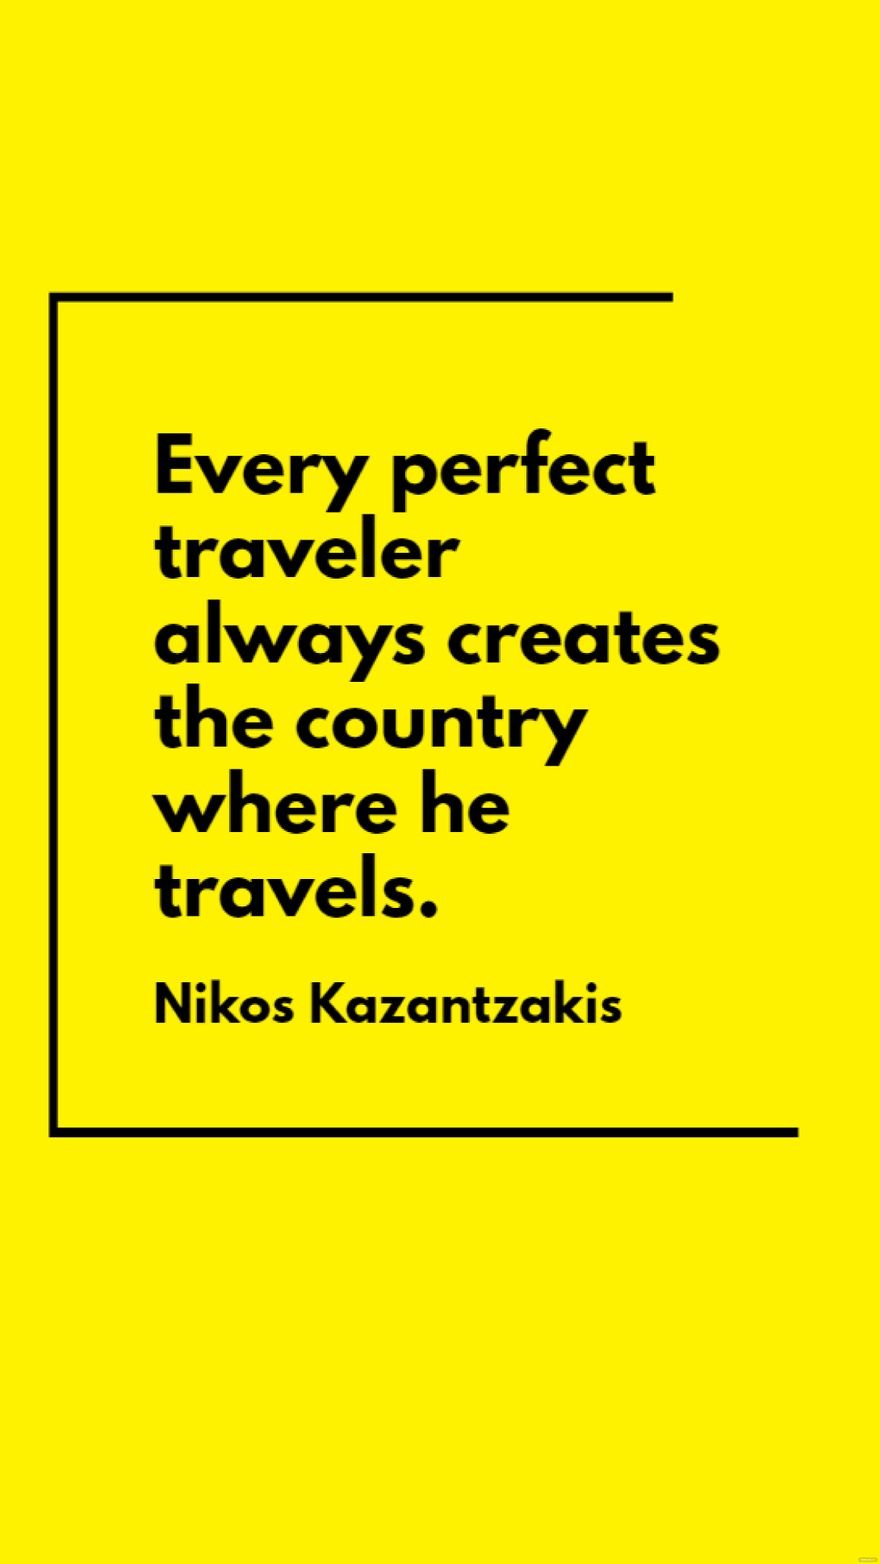 Nikos Kazantzakis - Every perfect traveler always creates the country where he travels.